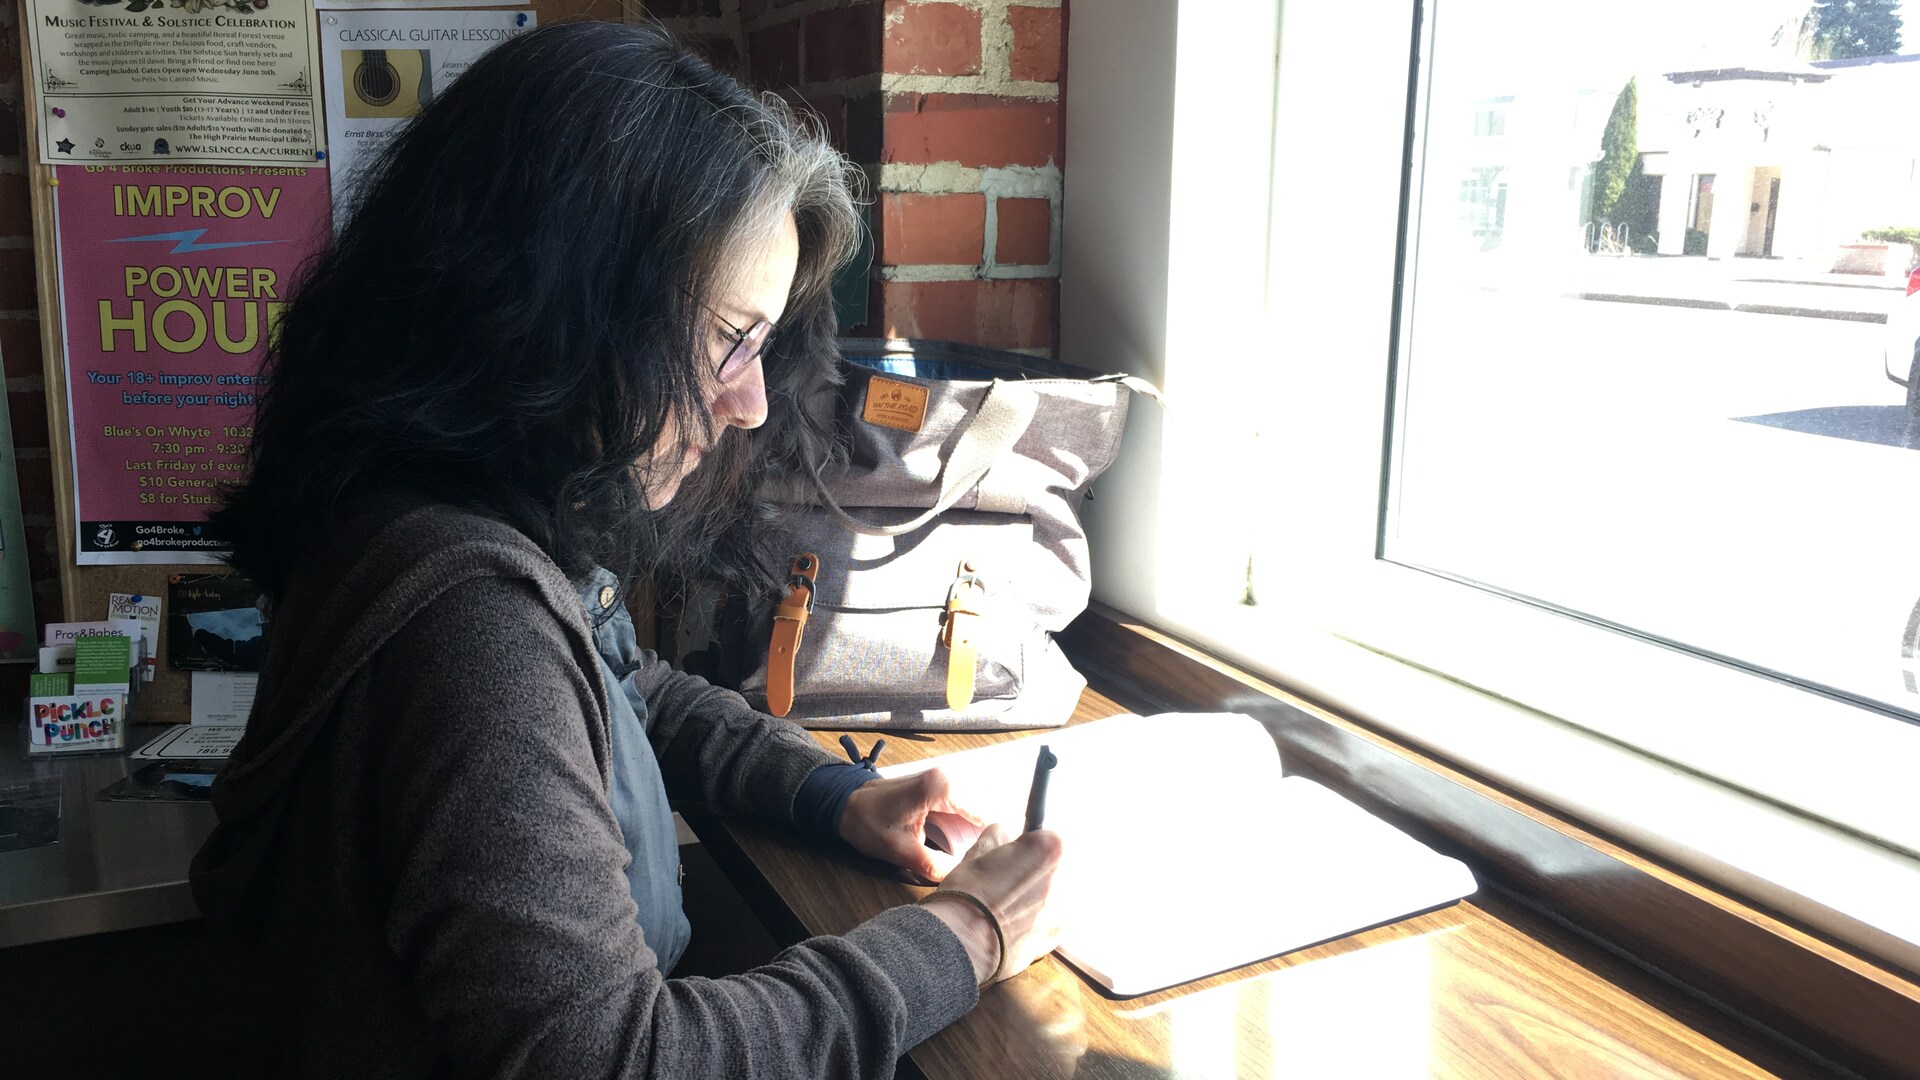 Portrait de profil d'une femme assise dans un café, devant une fenêtre, en train d'écrire èa la main dans un cahier.